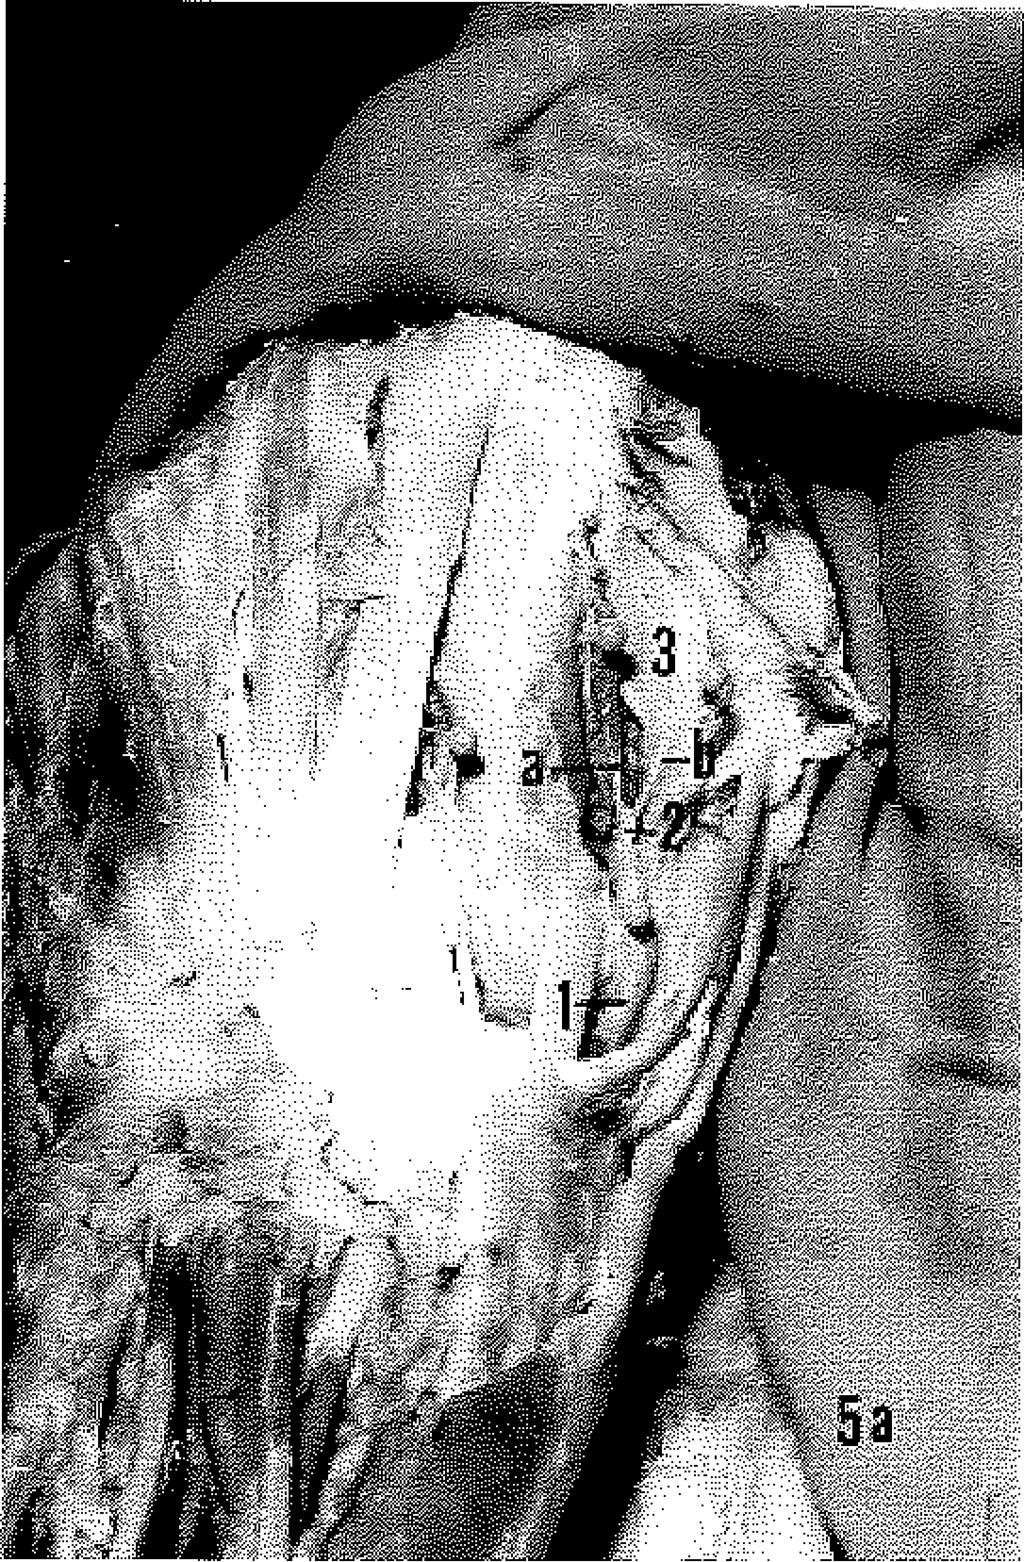 113(4): 265; 1961, 8. Braun, J.B., Werner, JE., Borrelly, J., Foucher, G., Miclıon, J.: Quelques notions d'anatomio arterielle de la main et leurs applications of chirurgicales. Ann. Chir.